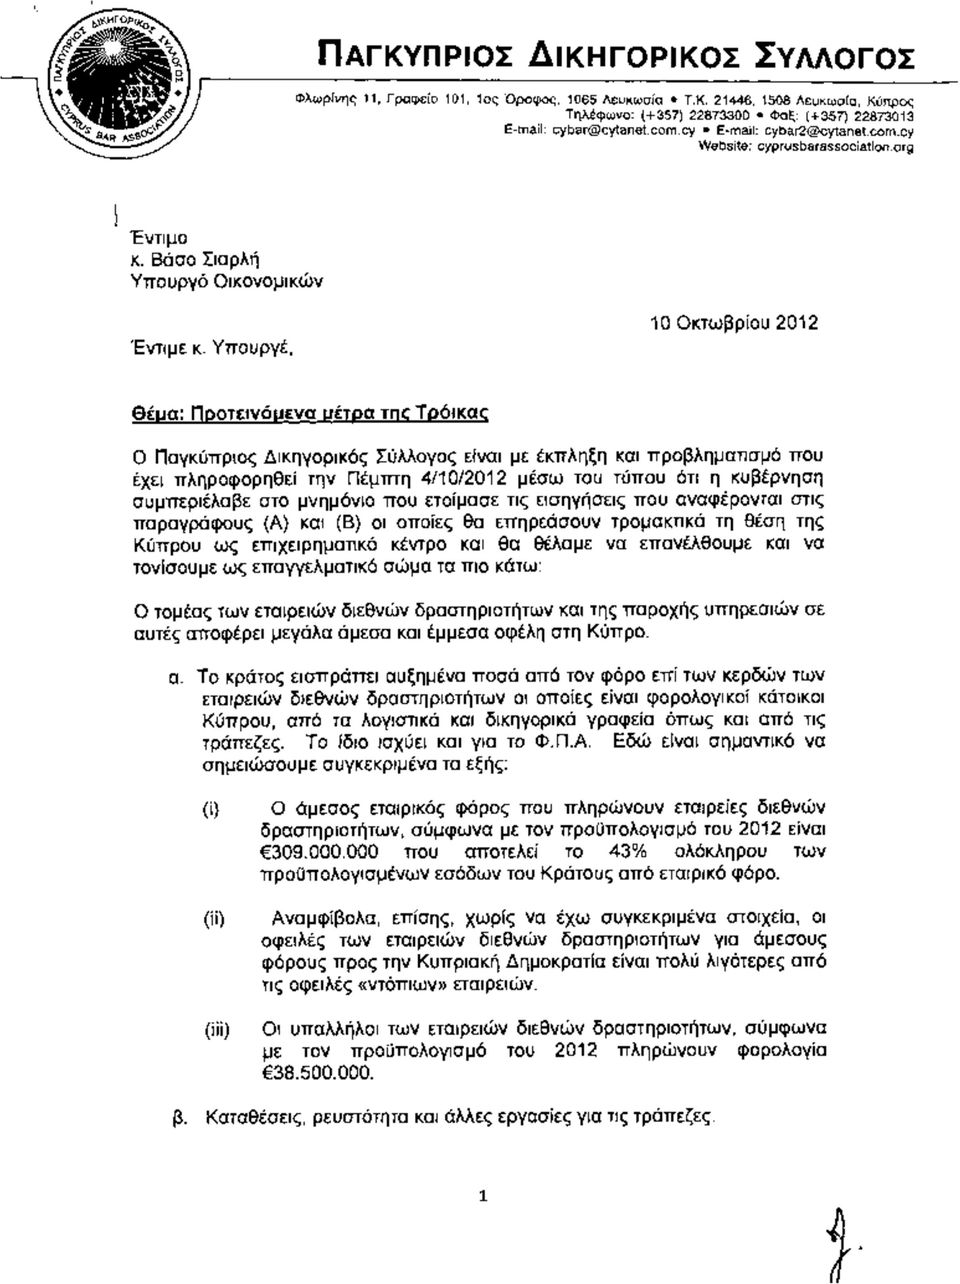 Υπουργέ, 10 Οκτωβρίου 2012 Θέμα: Προτεινόμενα μέτρα τικ Τρόικας Ο Παγκύπριος Δικηγορικός Σύλλογος είναι με έκπληξη και προβληματισμό που έχει πληροφορηθεί την Πέμπτη 4/10/2012 μέσω του τύπου ότι η